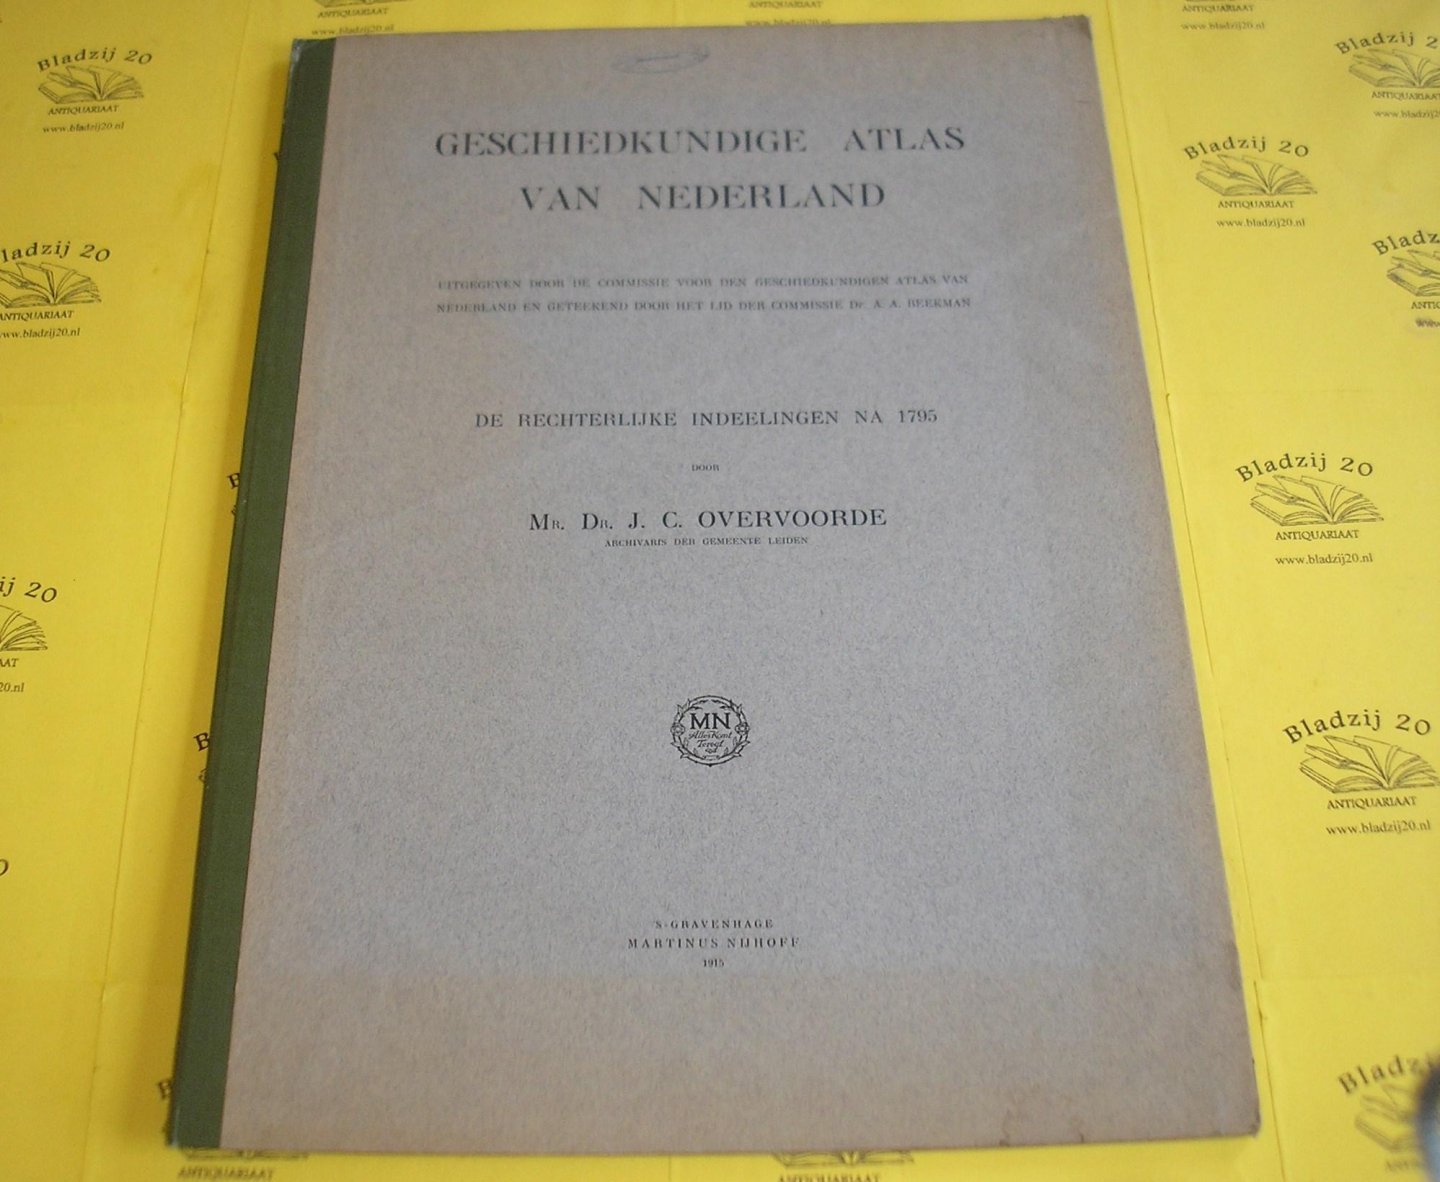 Overvoorde, J.C. - Geschiedkundige atlas van Nederland 16-17. De rechtelijke indeelingen na 1795.